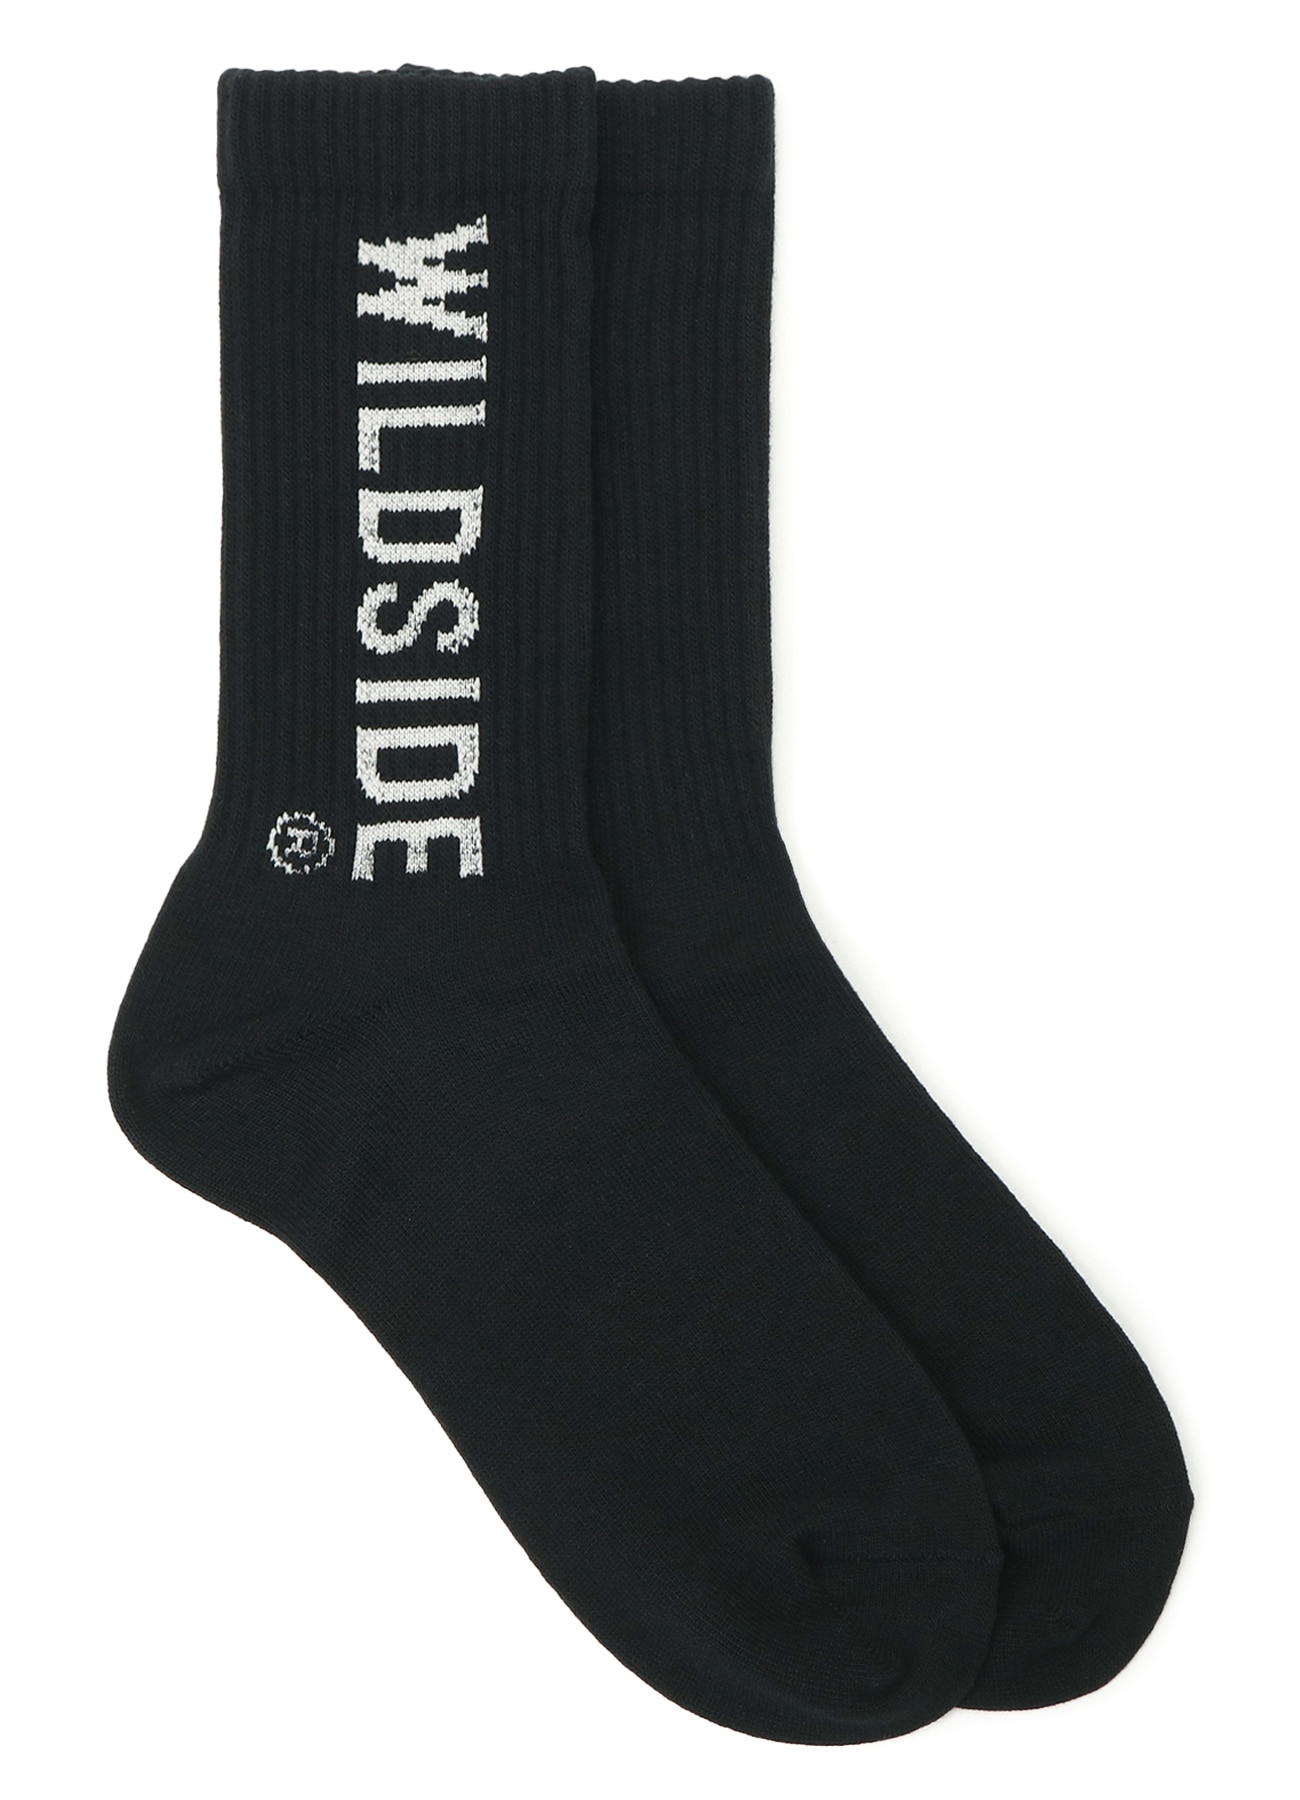 WILDSIDE Logo Socks